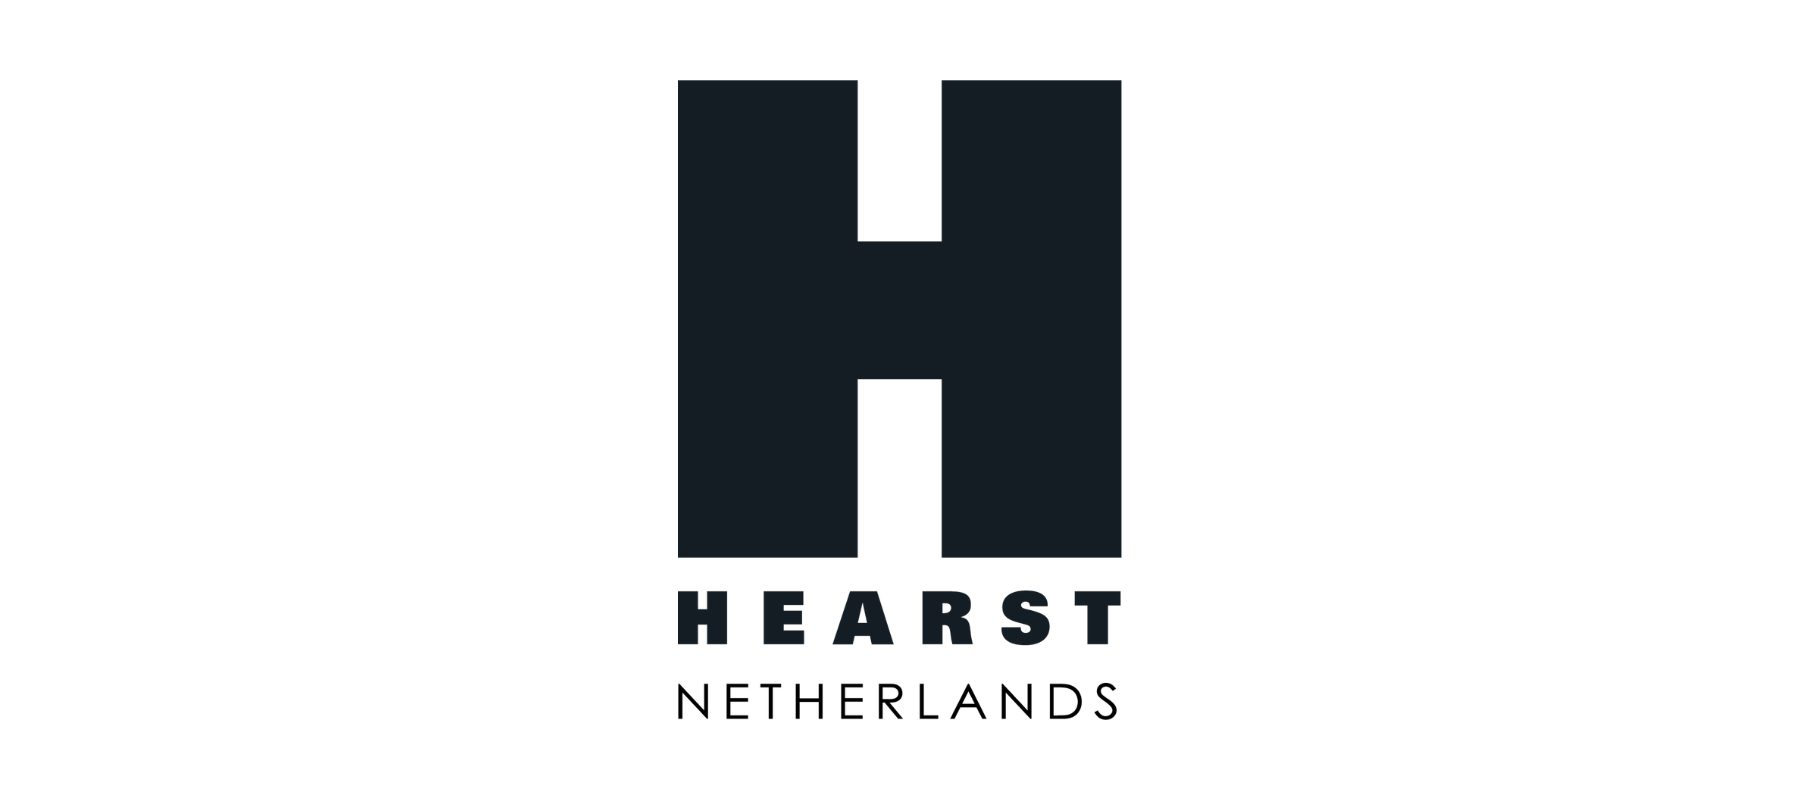 [Vacatures] Hearst Netherlands zoekt een Redacteur National Geographic